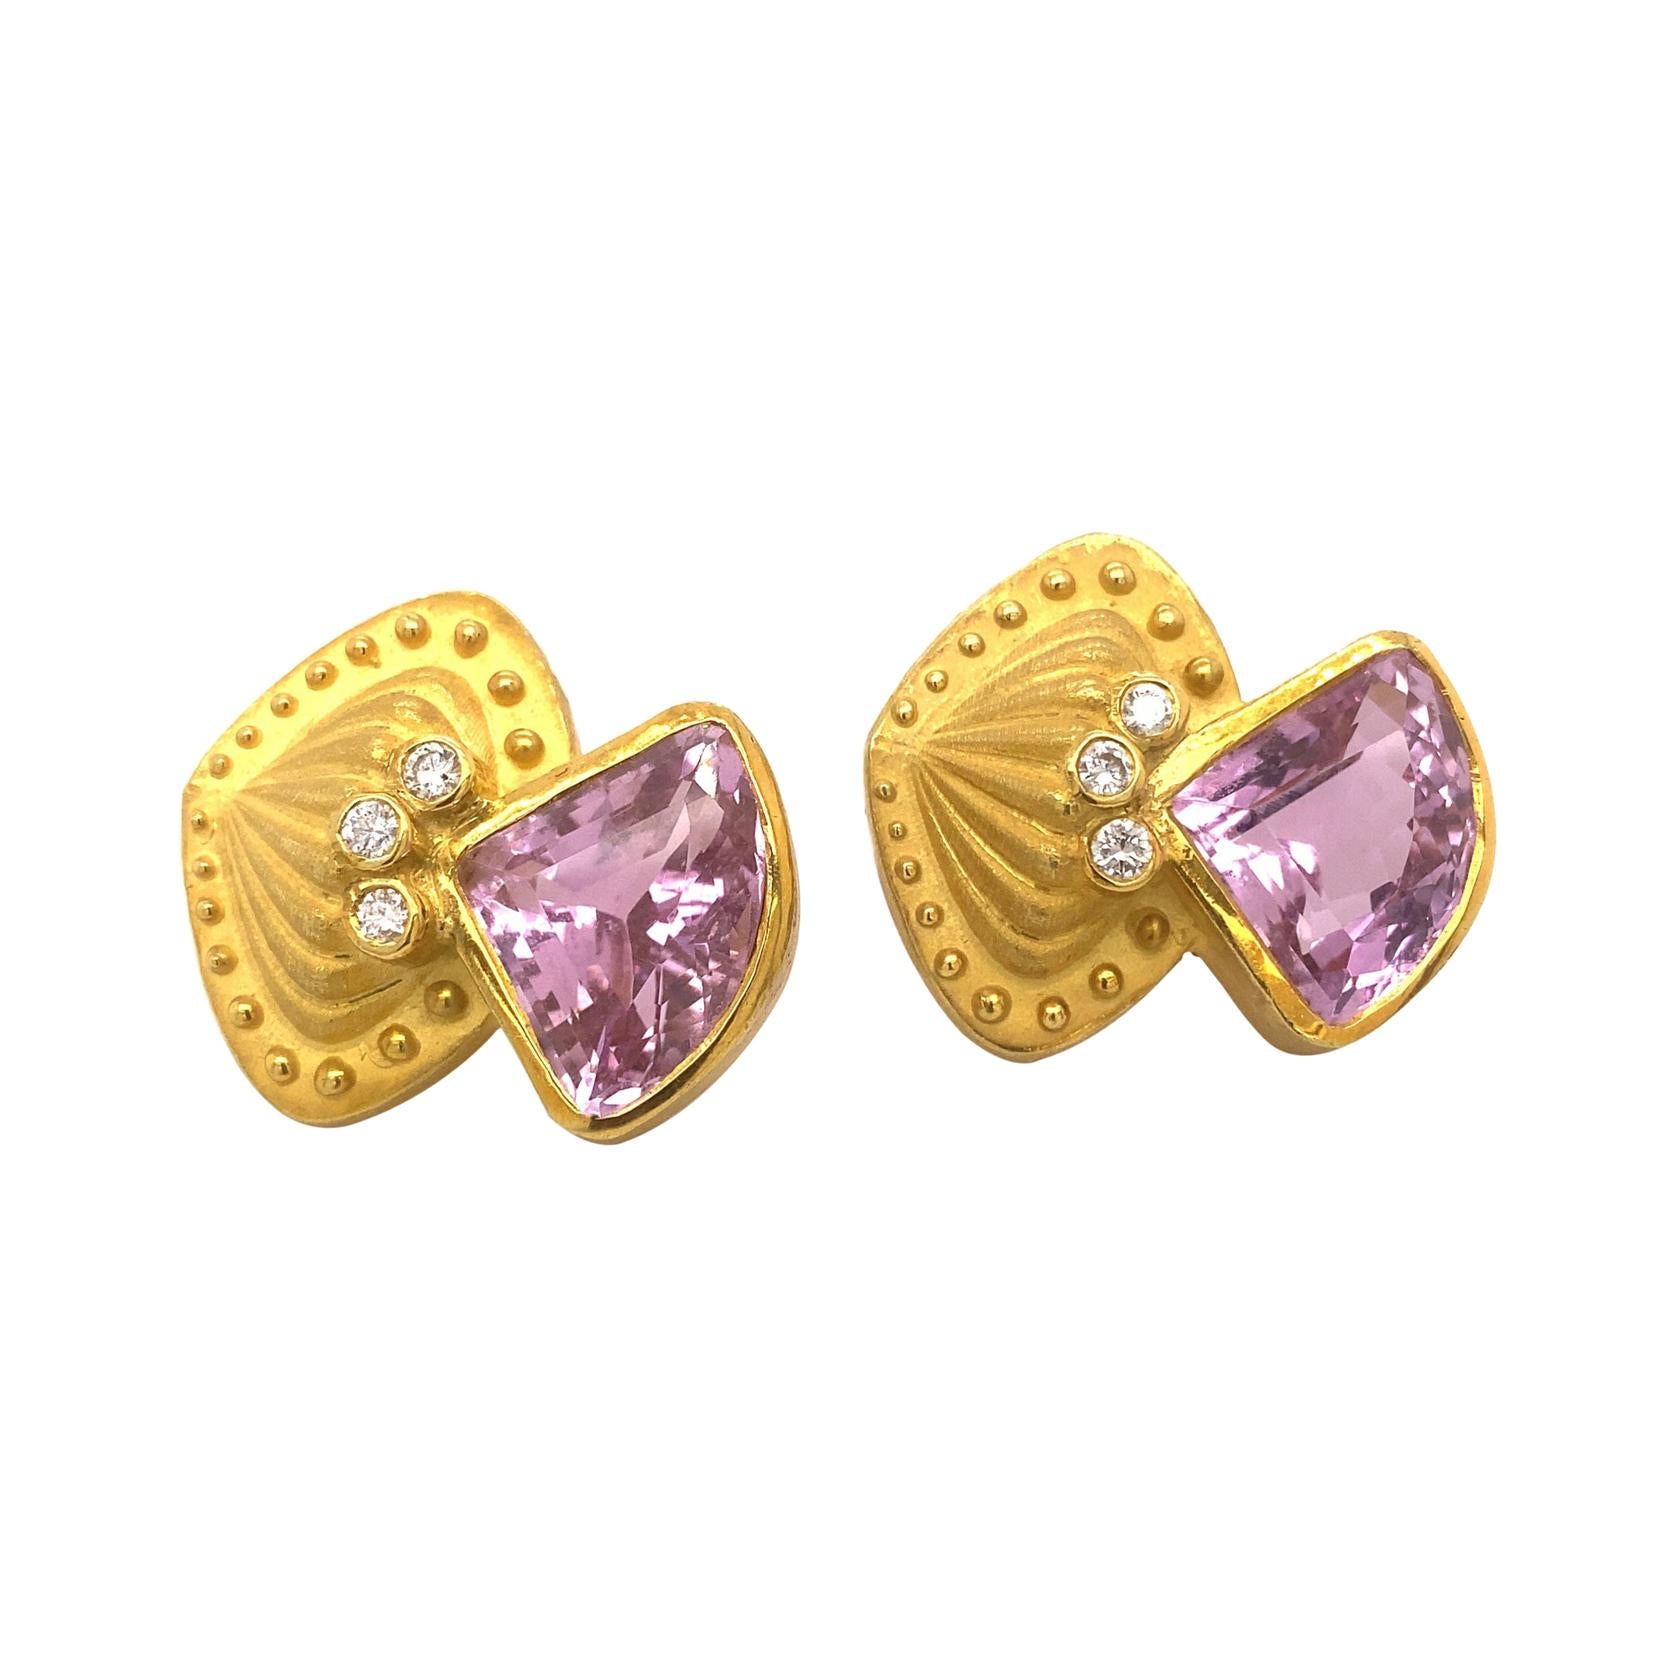 Designer Nerso 18k Gold Diamonds Kunzite Earrings 38 Grams For Sale